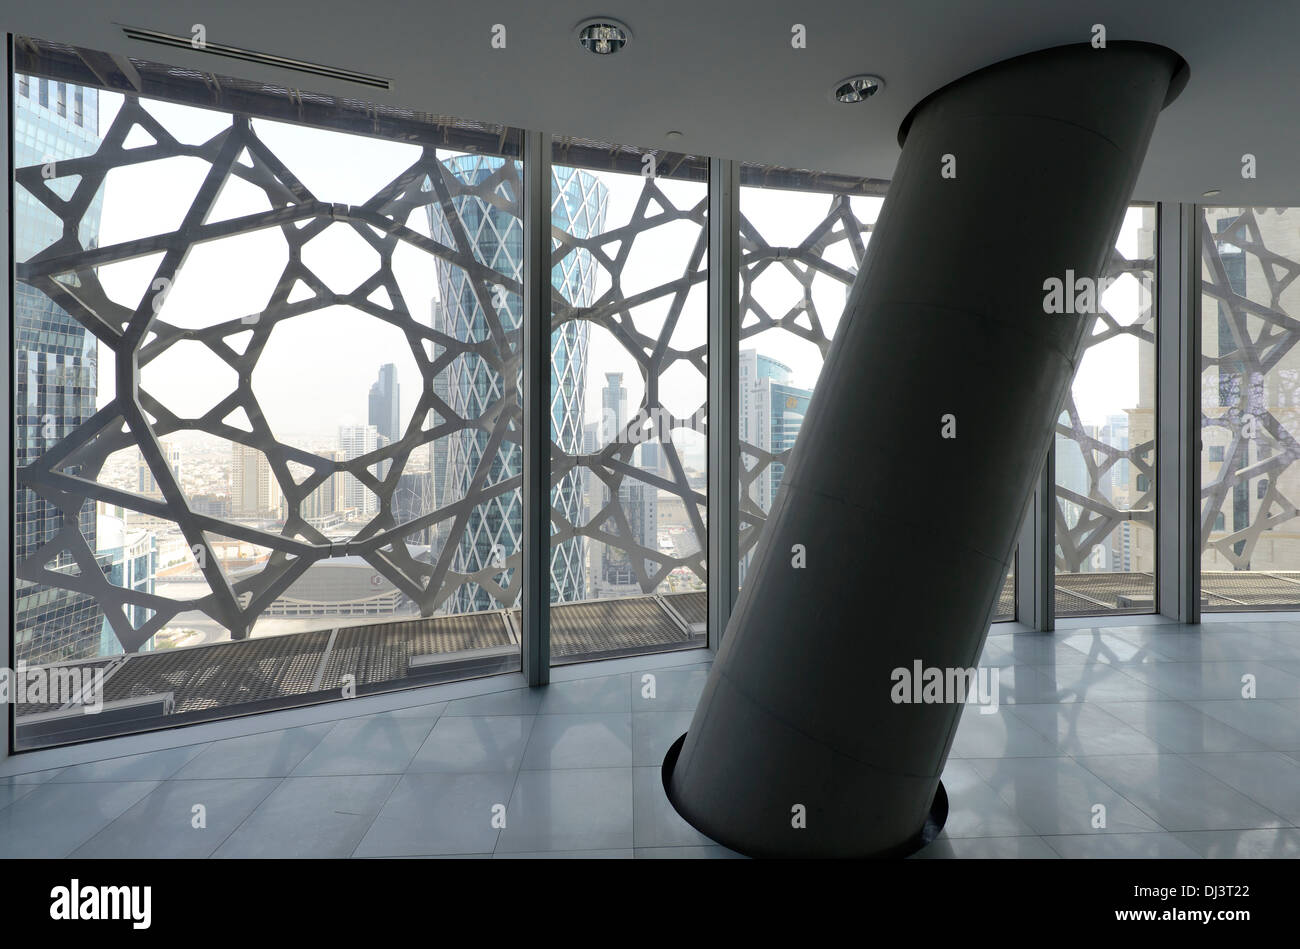 Burj Tower in Doha, Katar Doha, Qatar. Architekt: Ateliers Jean Nouvel, 2012. Überblick über typische Etage. Stockfoto